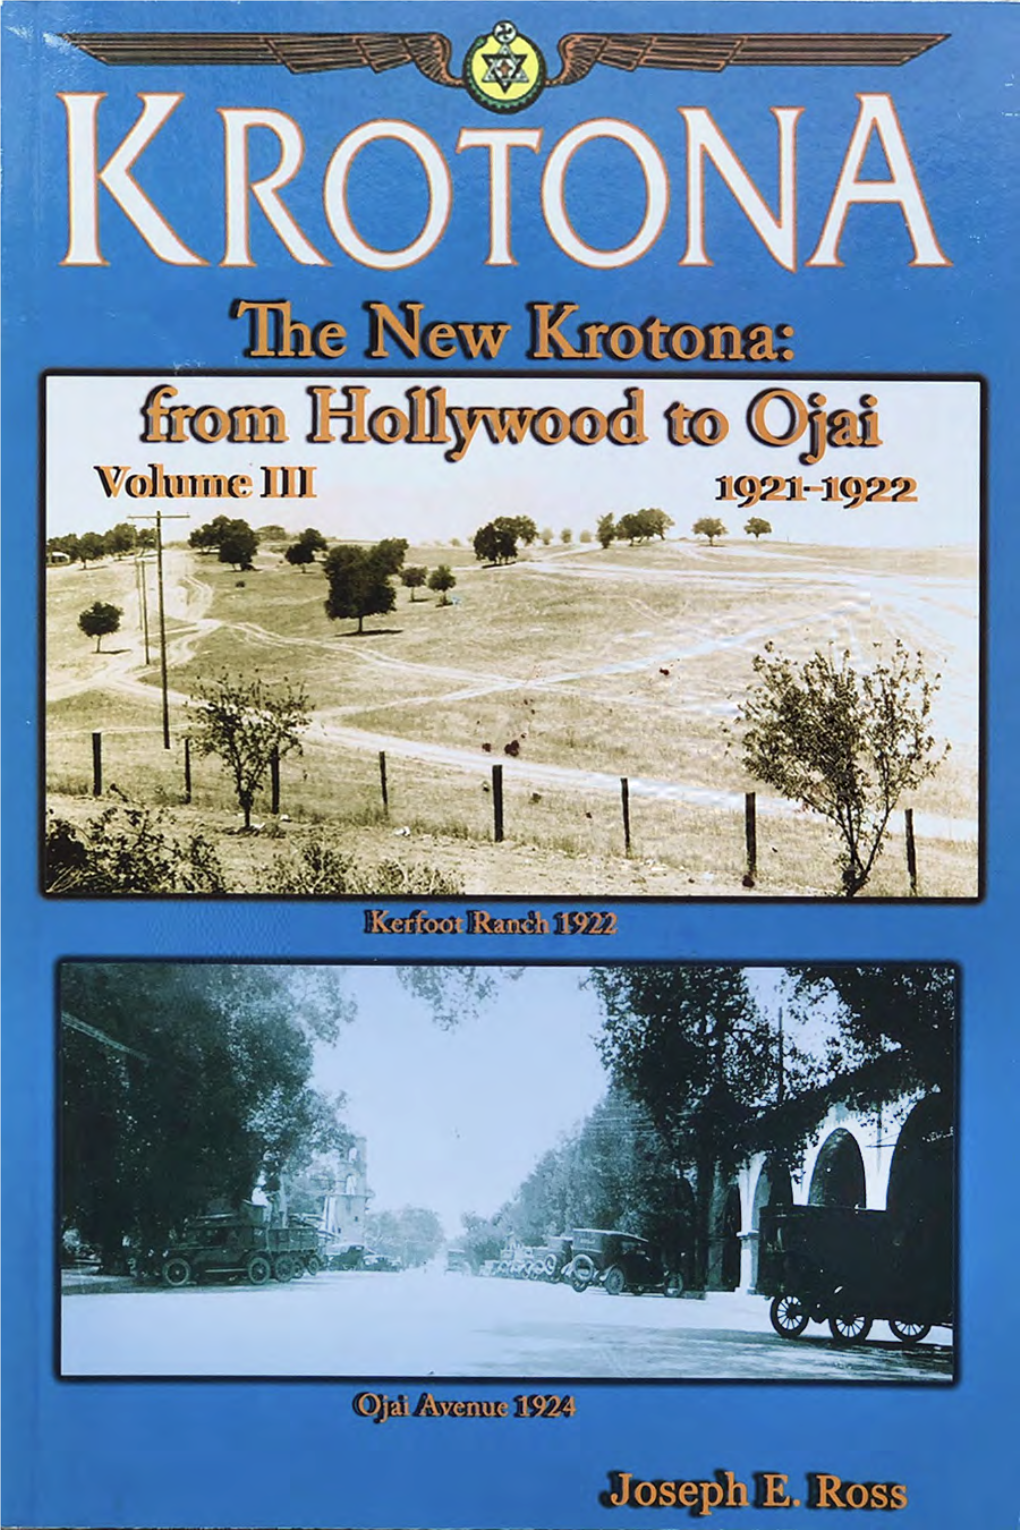 The New Krotona: from Hollywood to Ojai